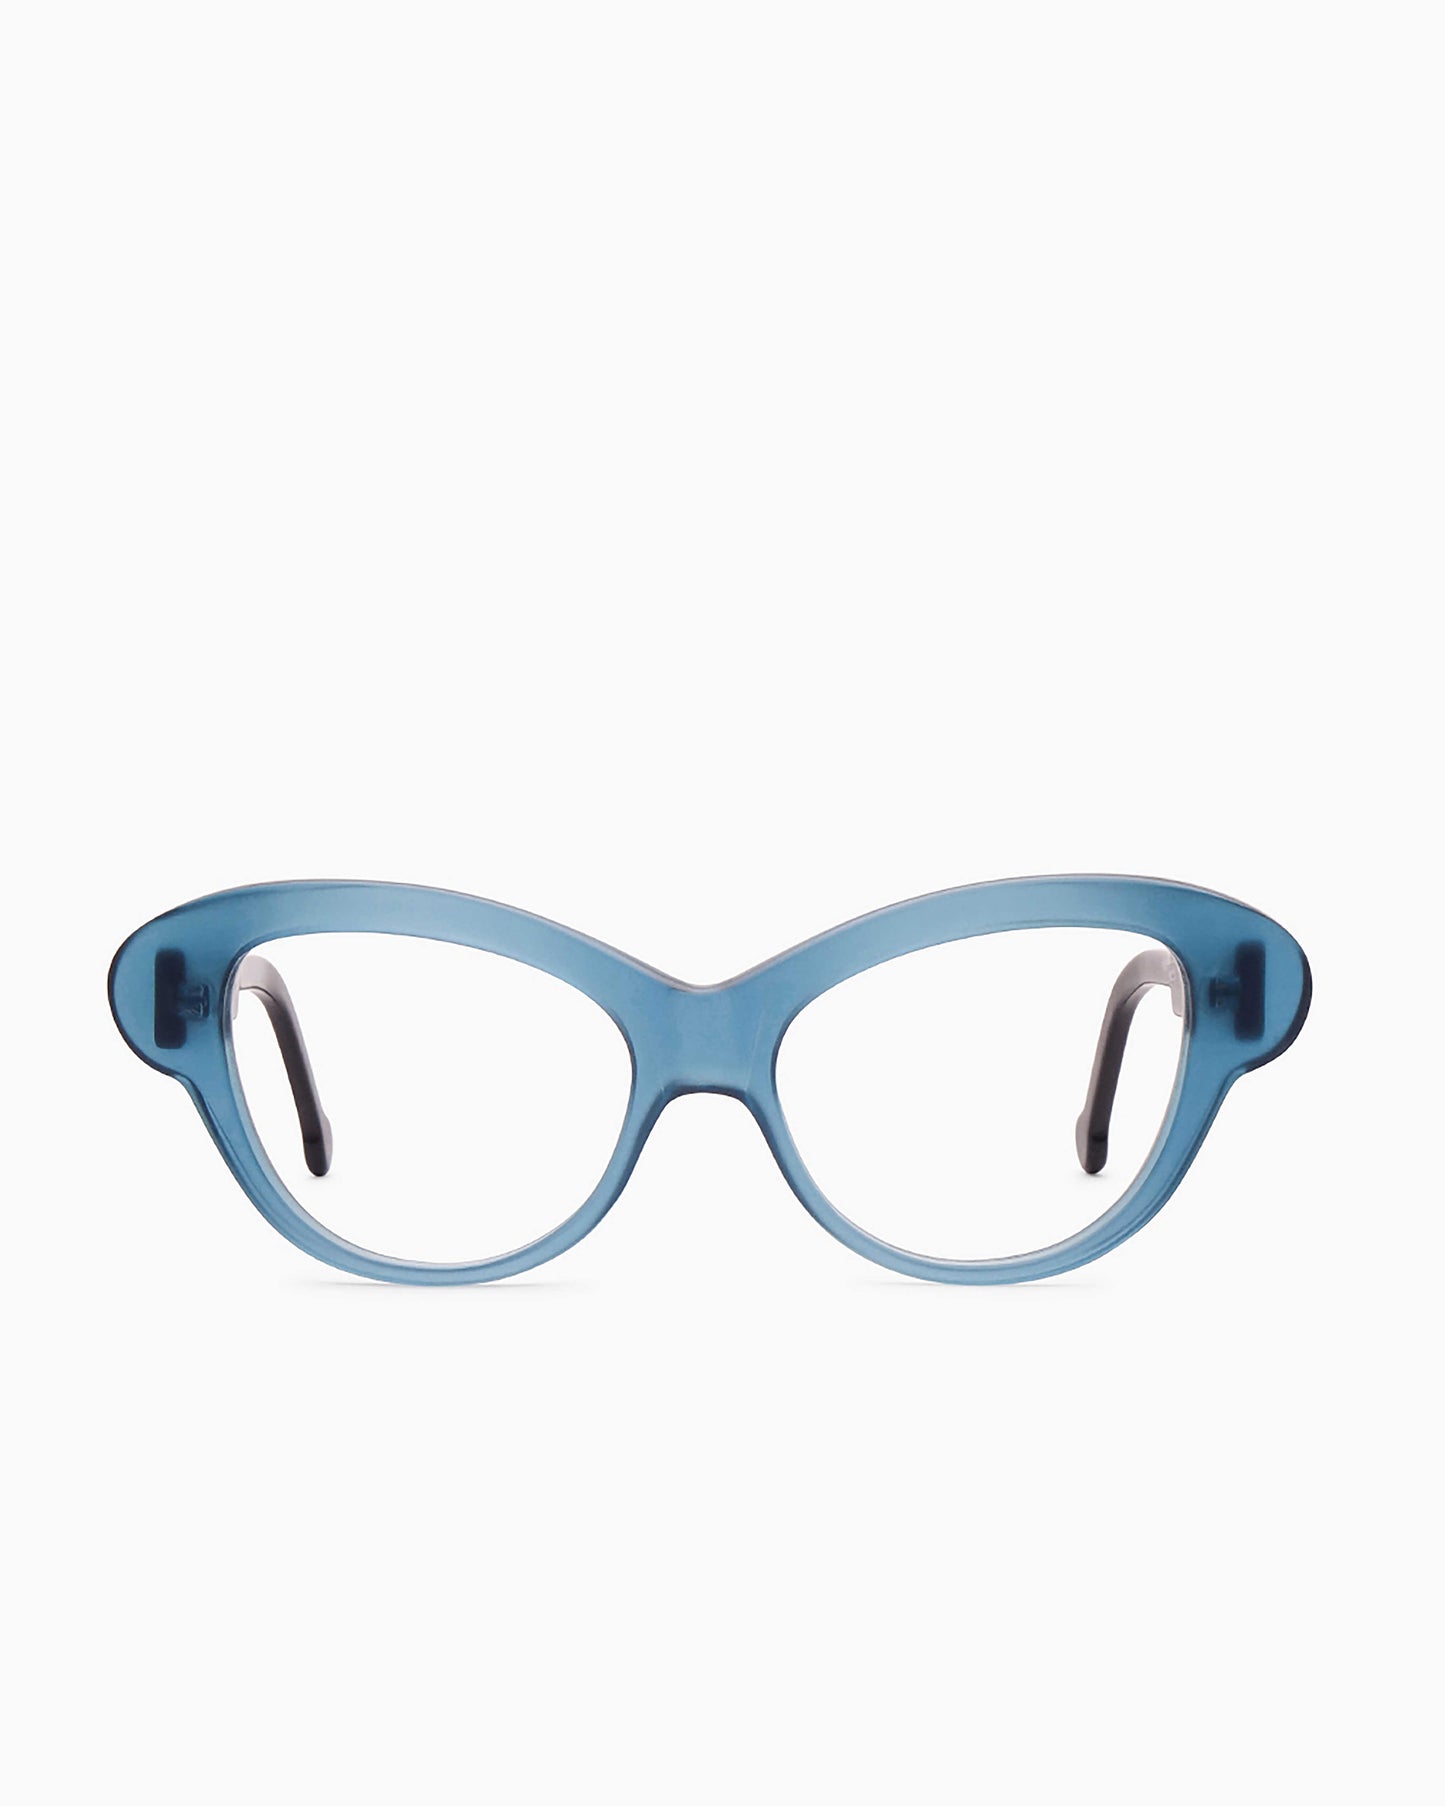 Marie-Sophie Dion - Perrier - Blu | glasses bar